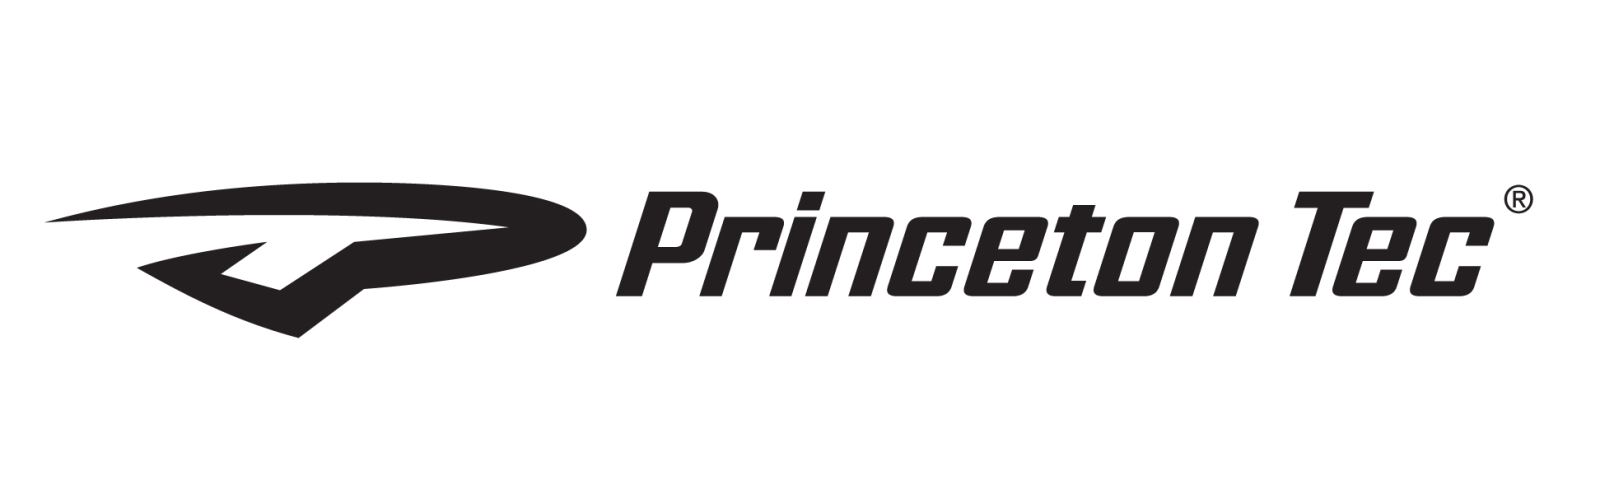 princeton-tec-logo-wetrekvn